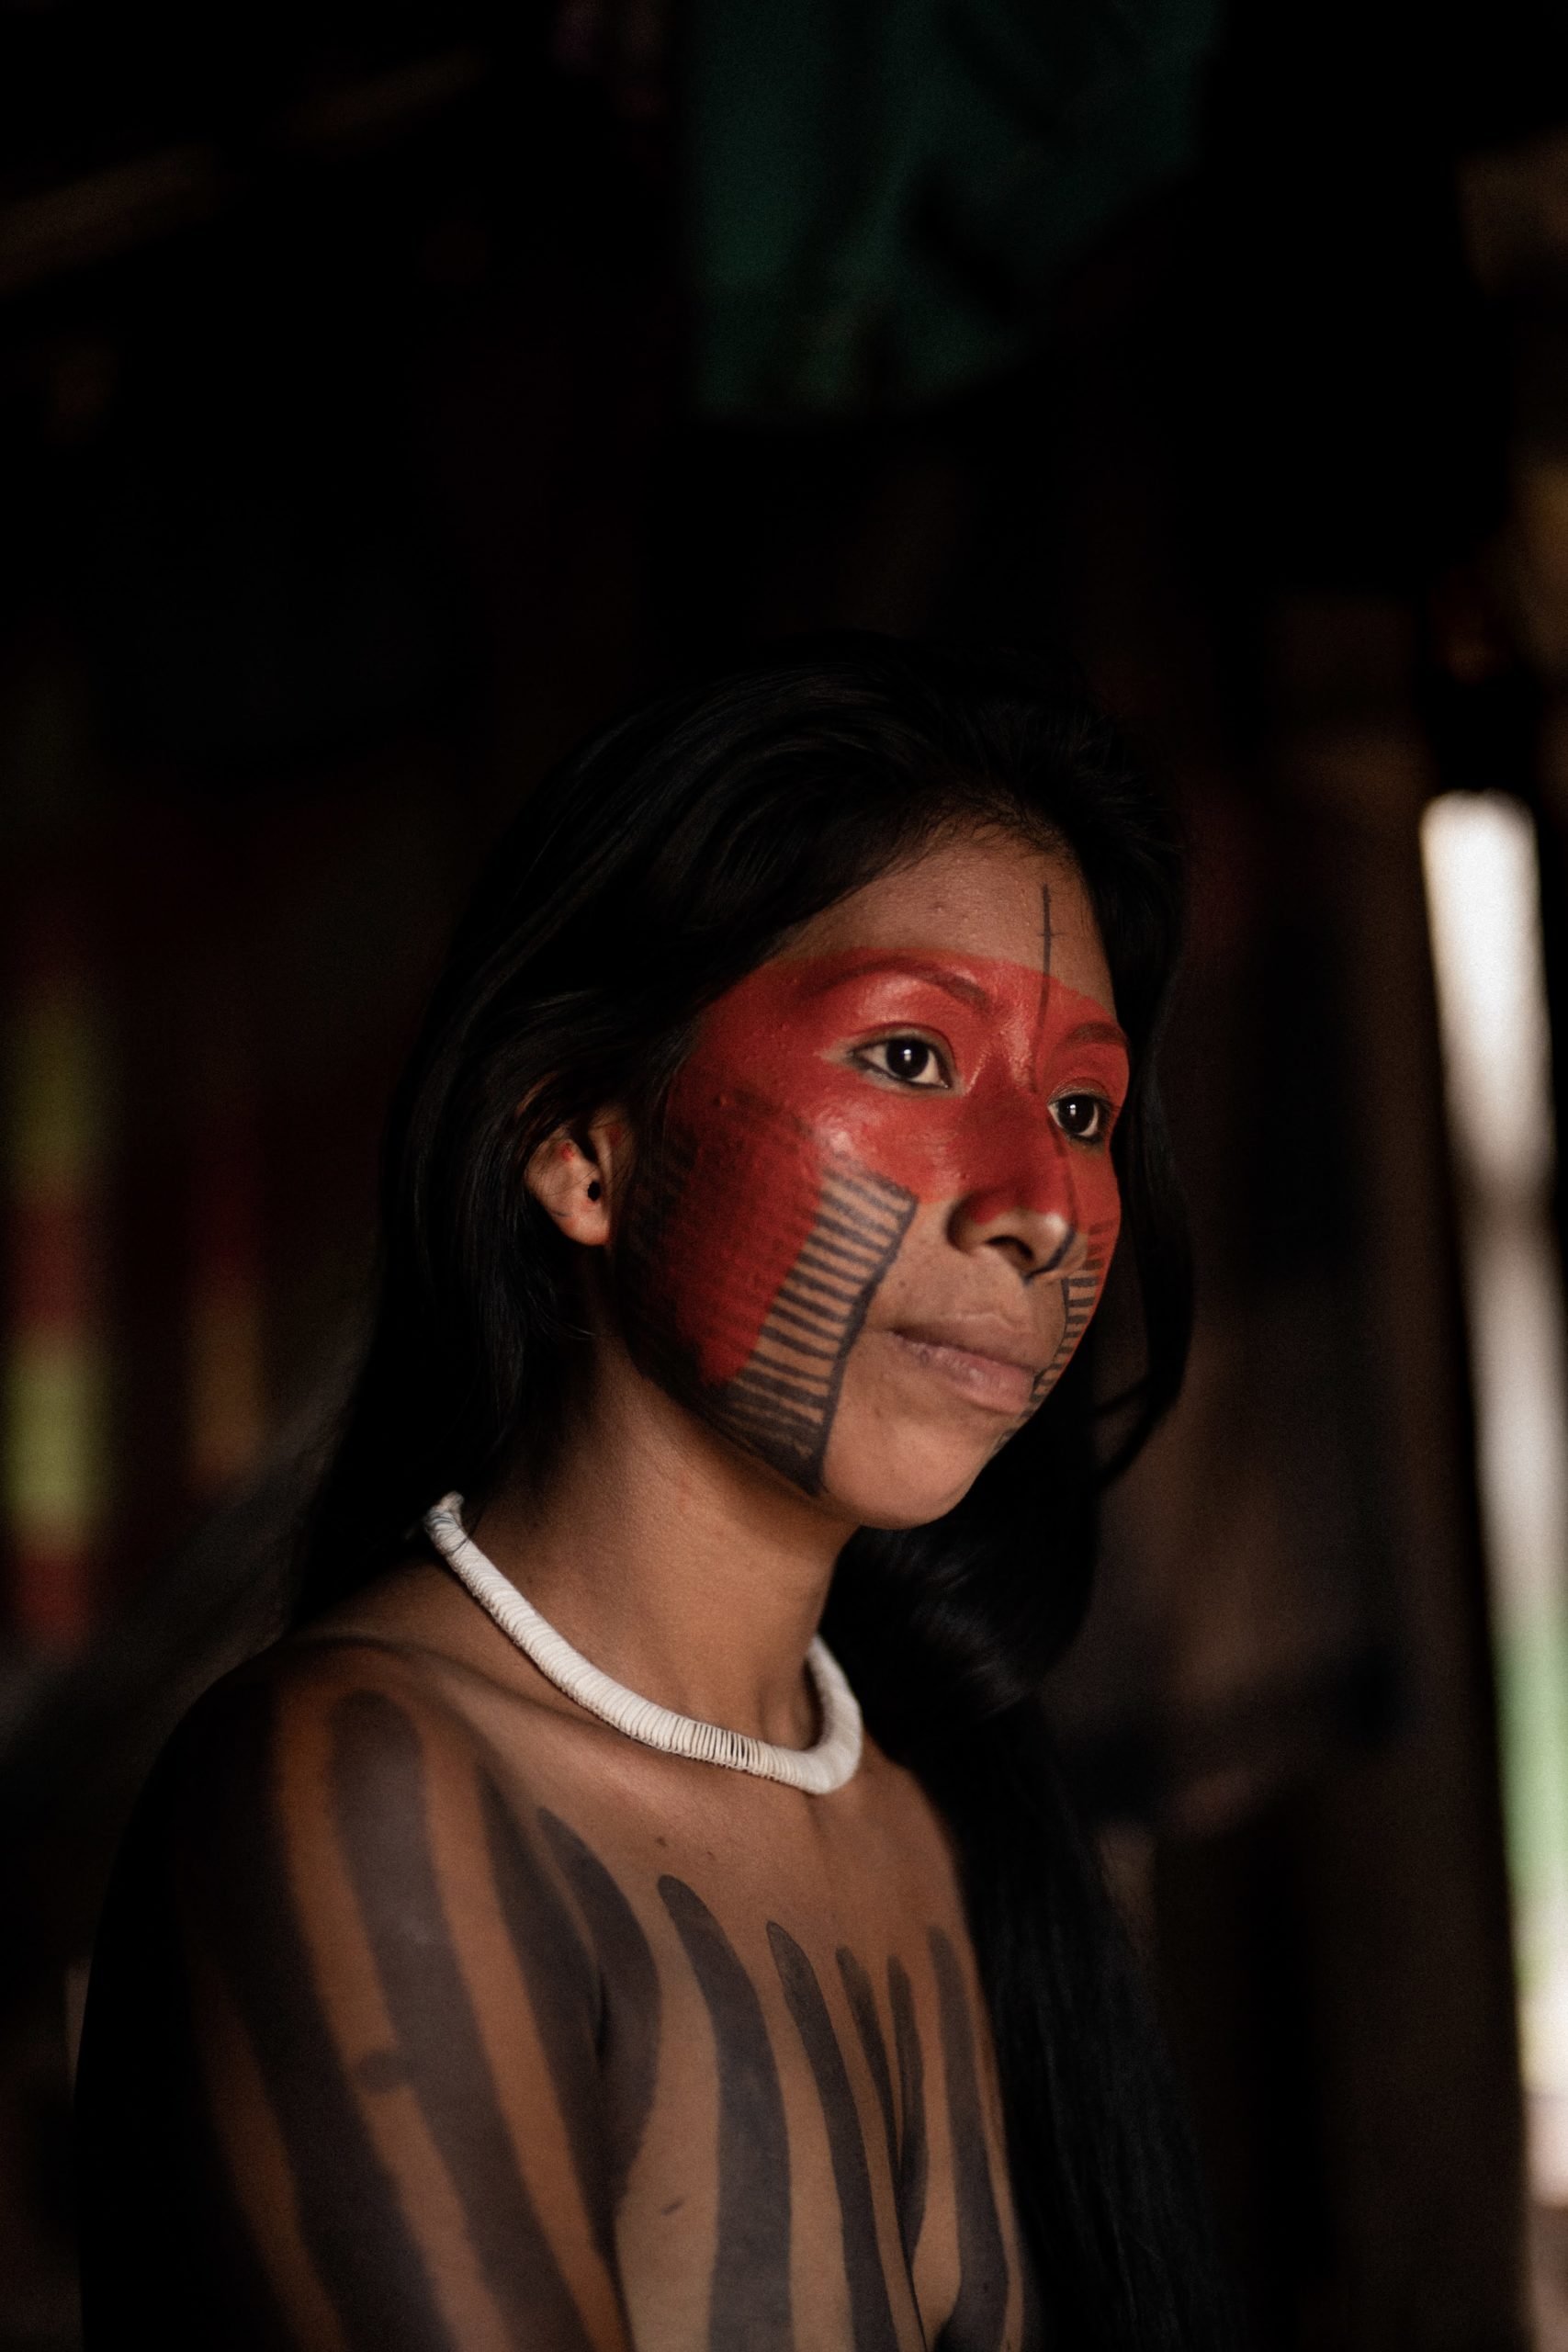  Irepoti Metuktire är en ung ledare från Kayapó Mebengokrefolket. Hon arbetar med att stötta urfolks hälsocenter (Casas de Apoio à Saúde Indígena). Foto: Alice Aedy    